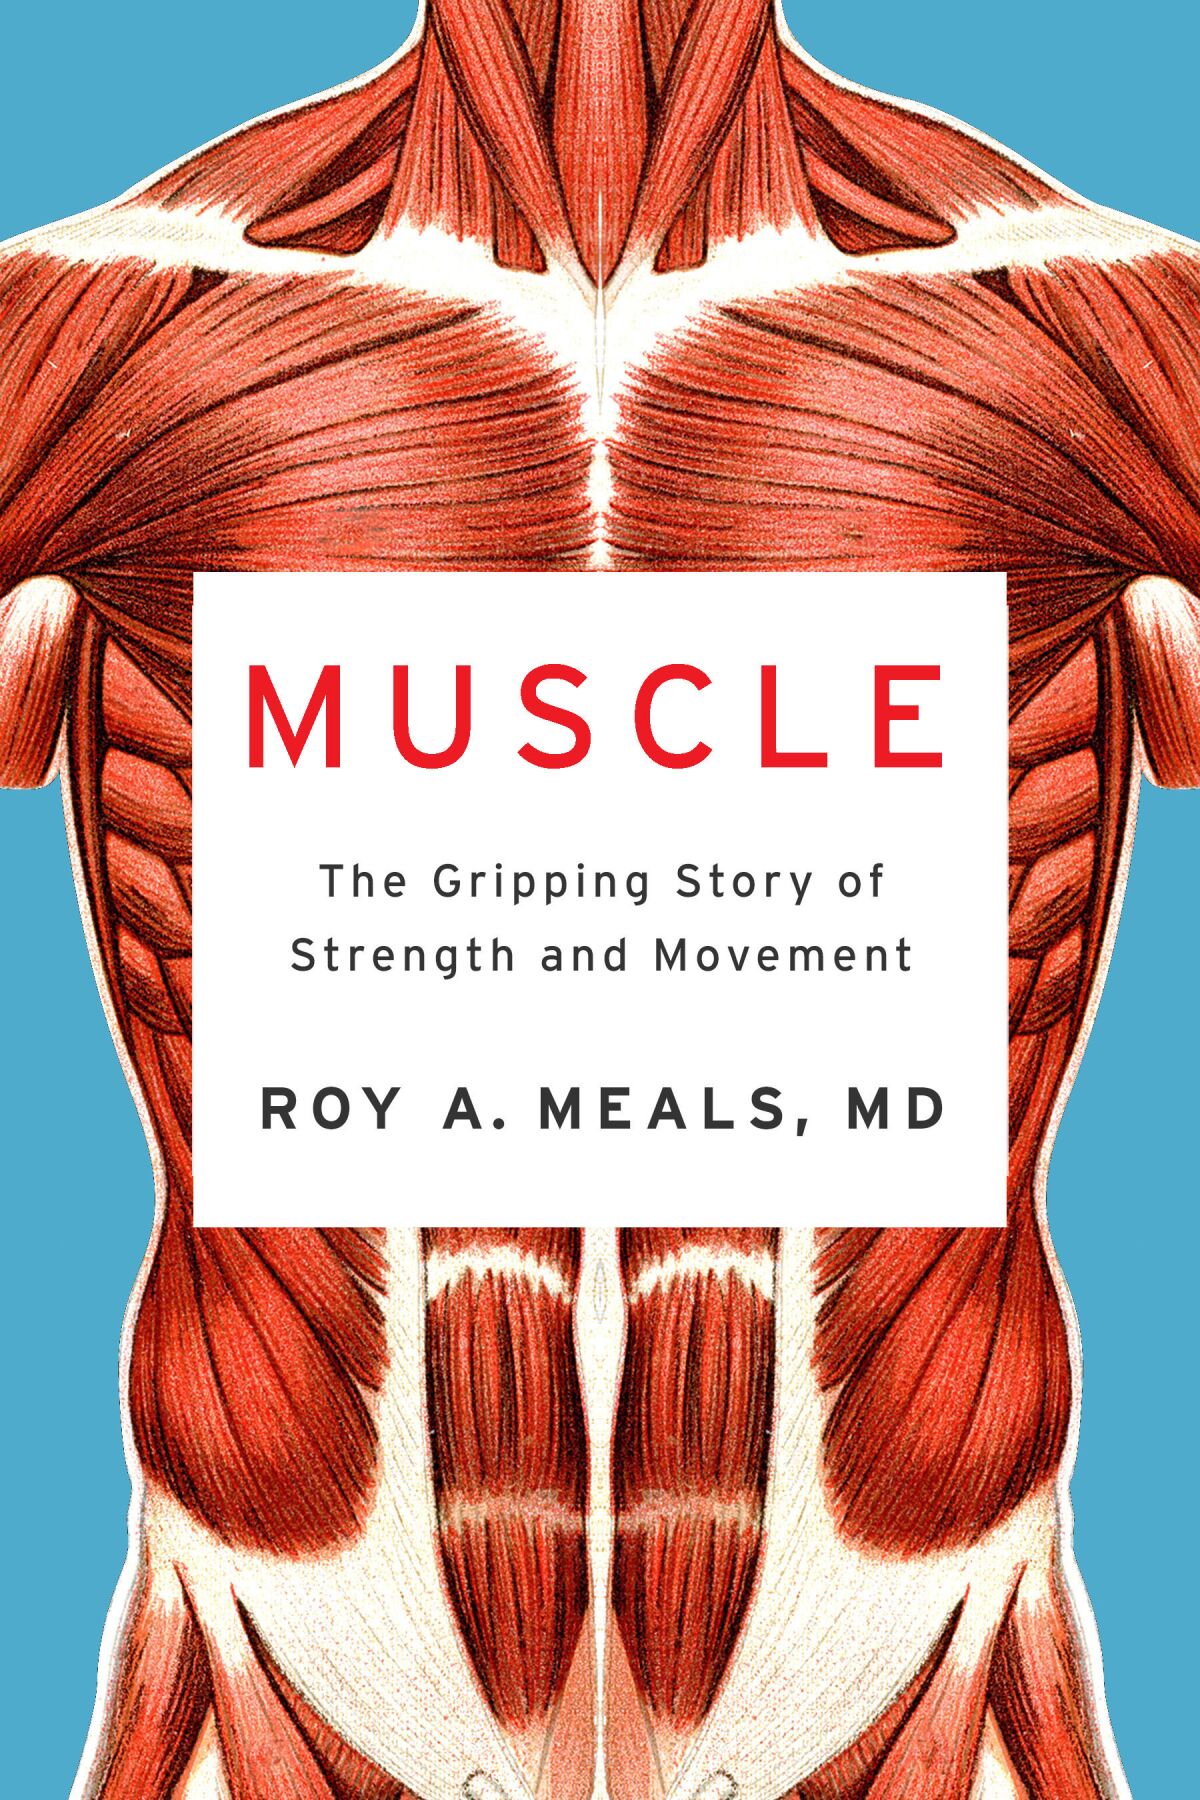   Das Buchcover für „Muscle“ von Roy A. Meals zeigt einen anatomischen Körper